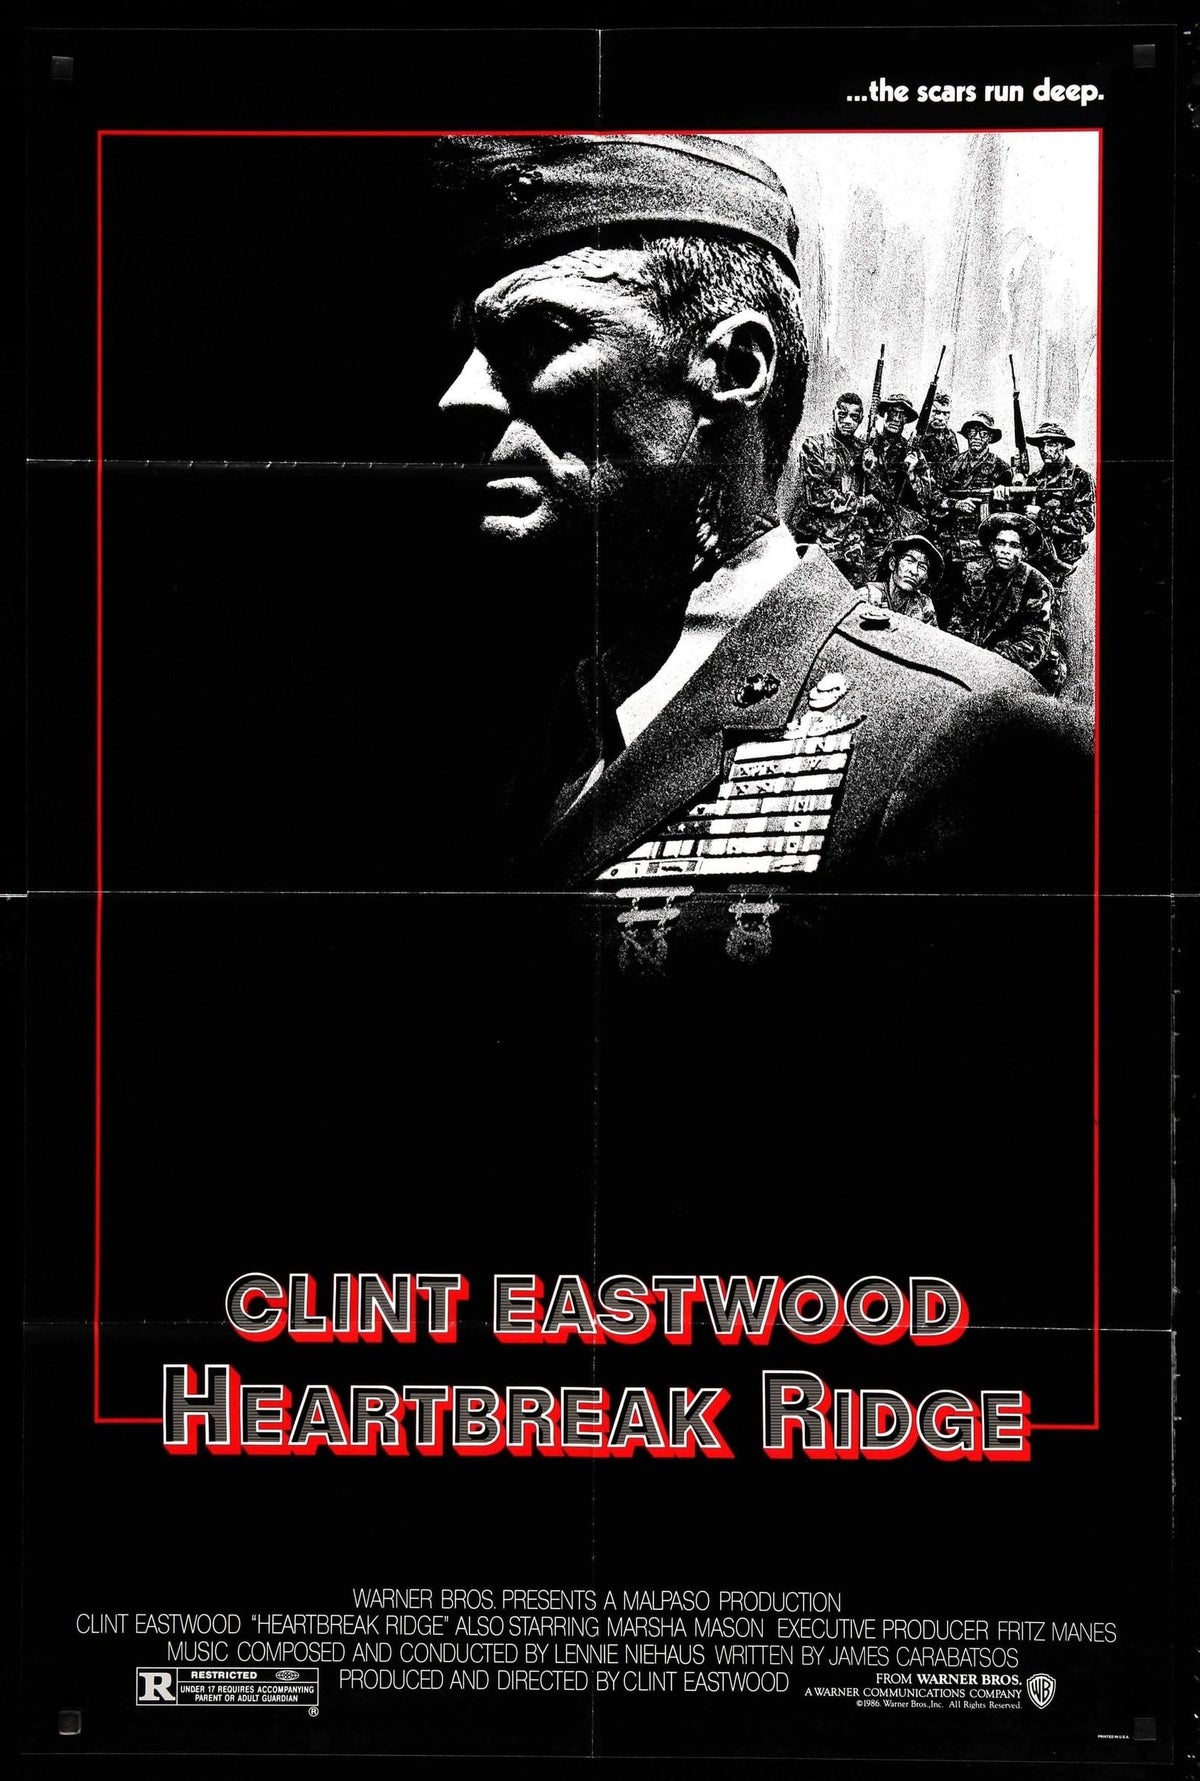 Heartbreak Ridge (1986) original movie poster for sale at Original Film Art